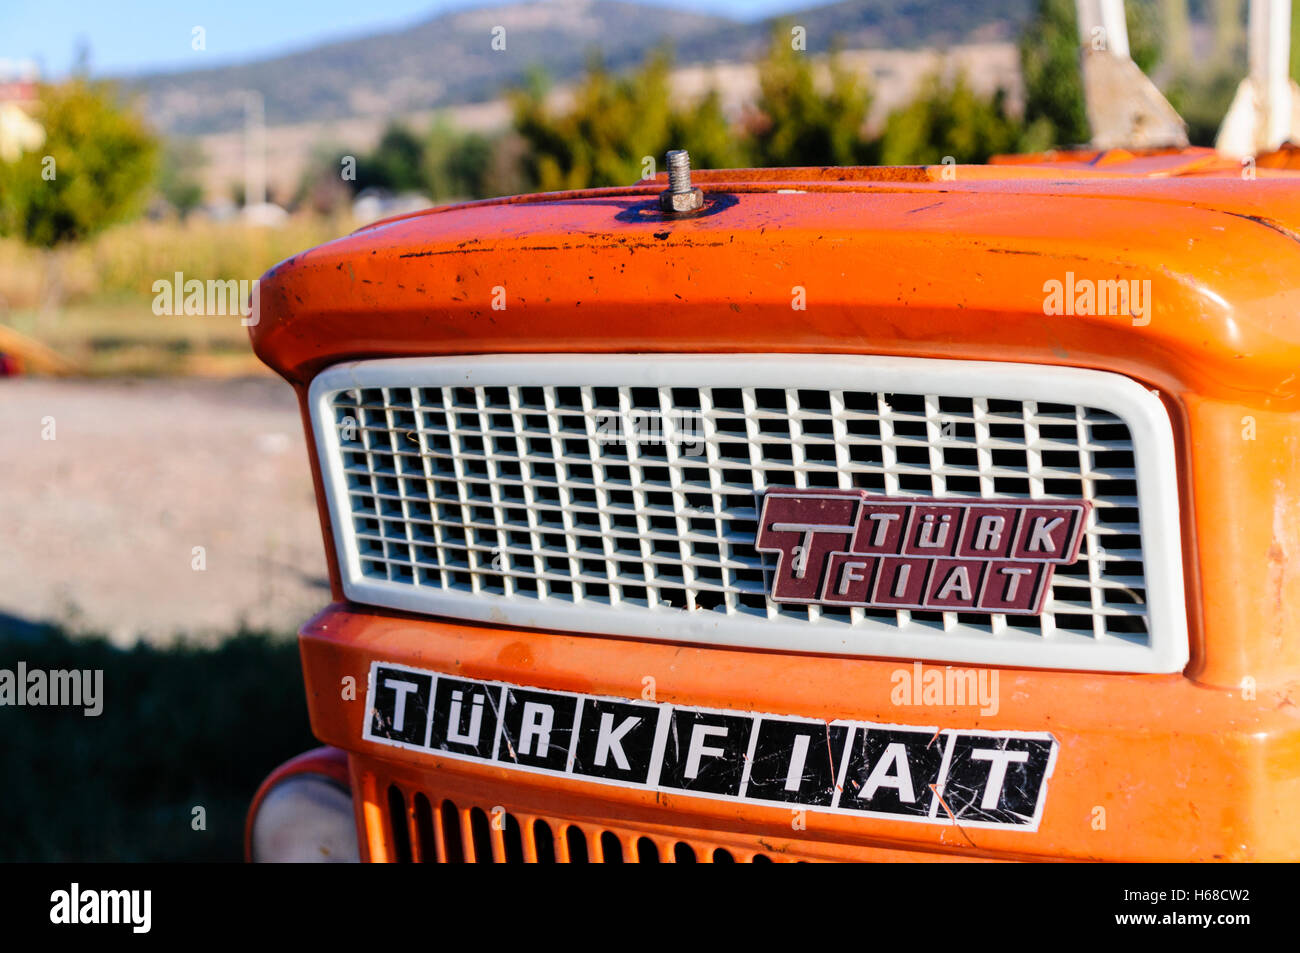 Turkfiat Fiat tracteur orange turc Banque D'Images